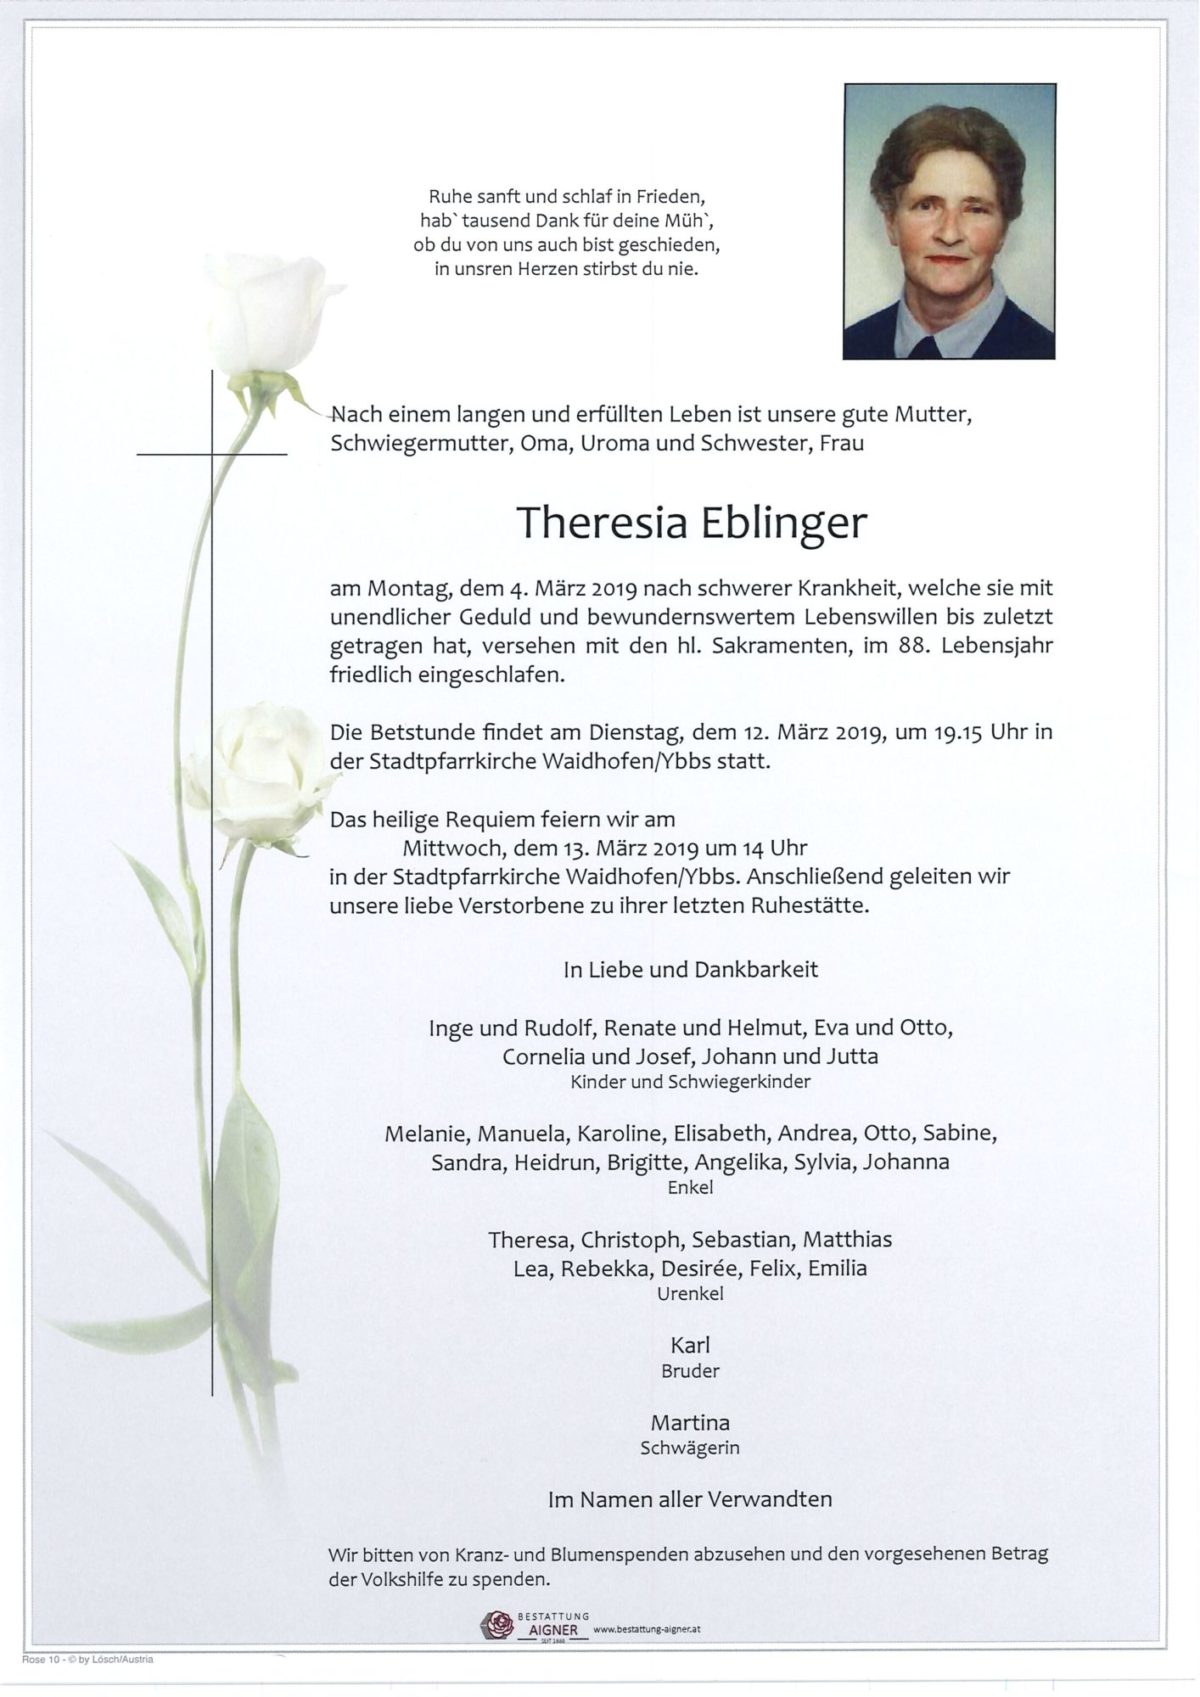 Theresia Eblinger